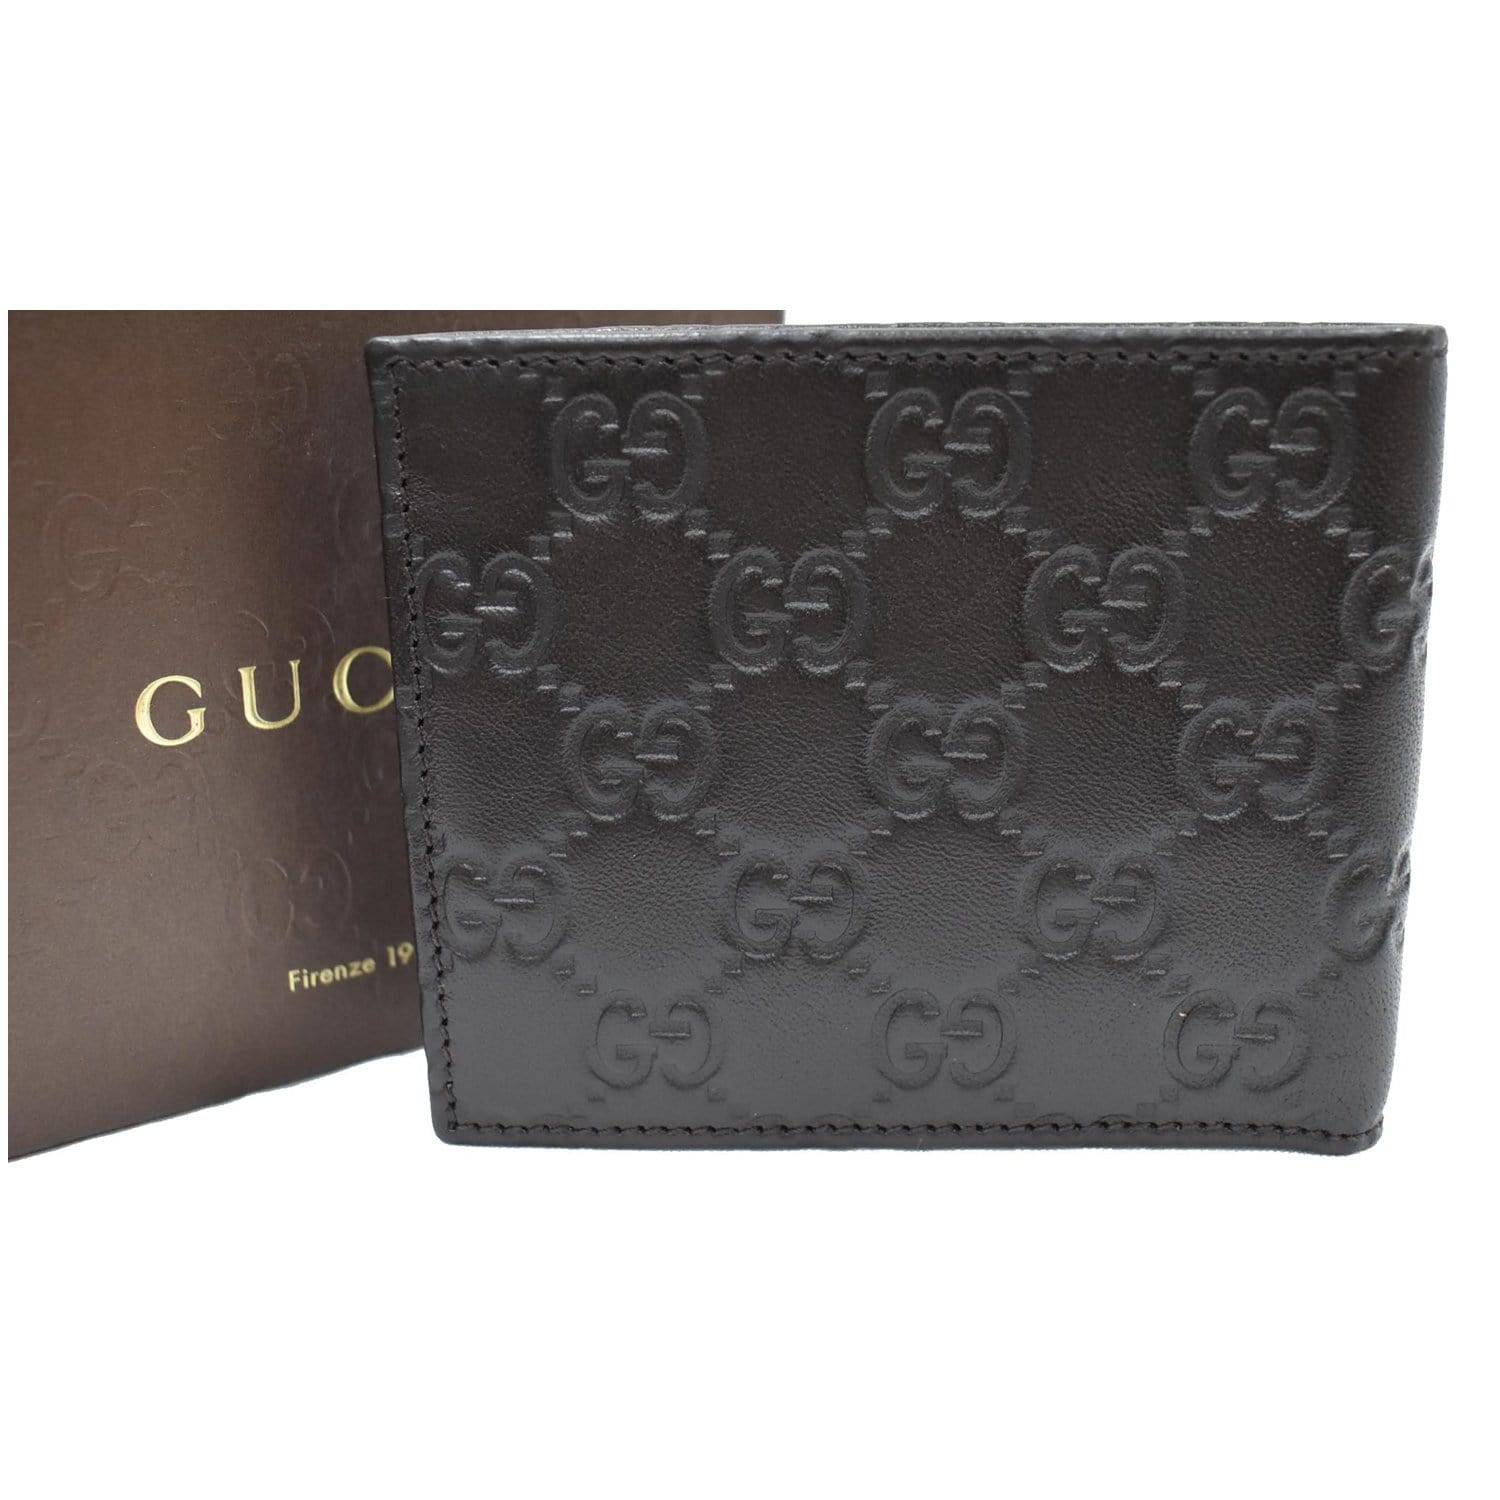 Gucci Mens Long Wallets, Black